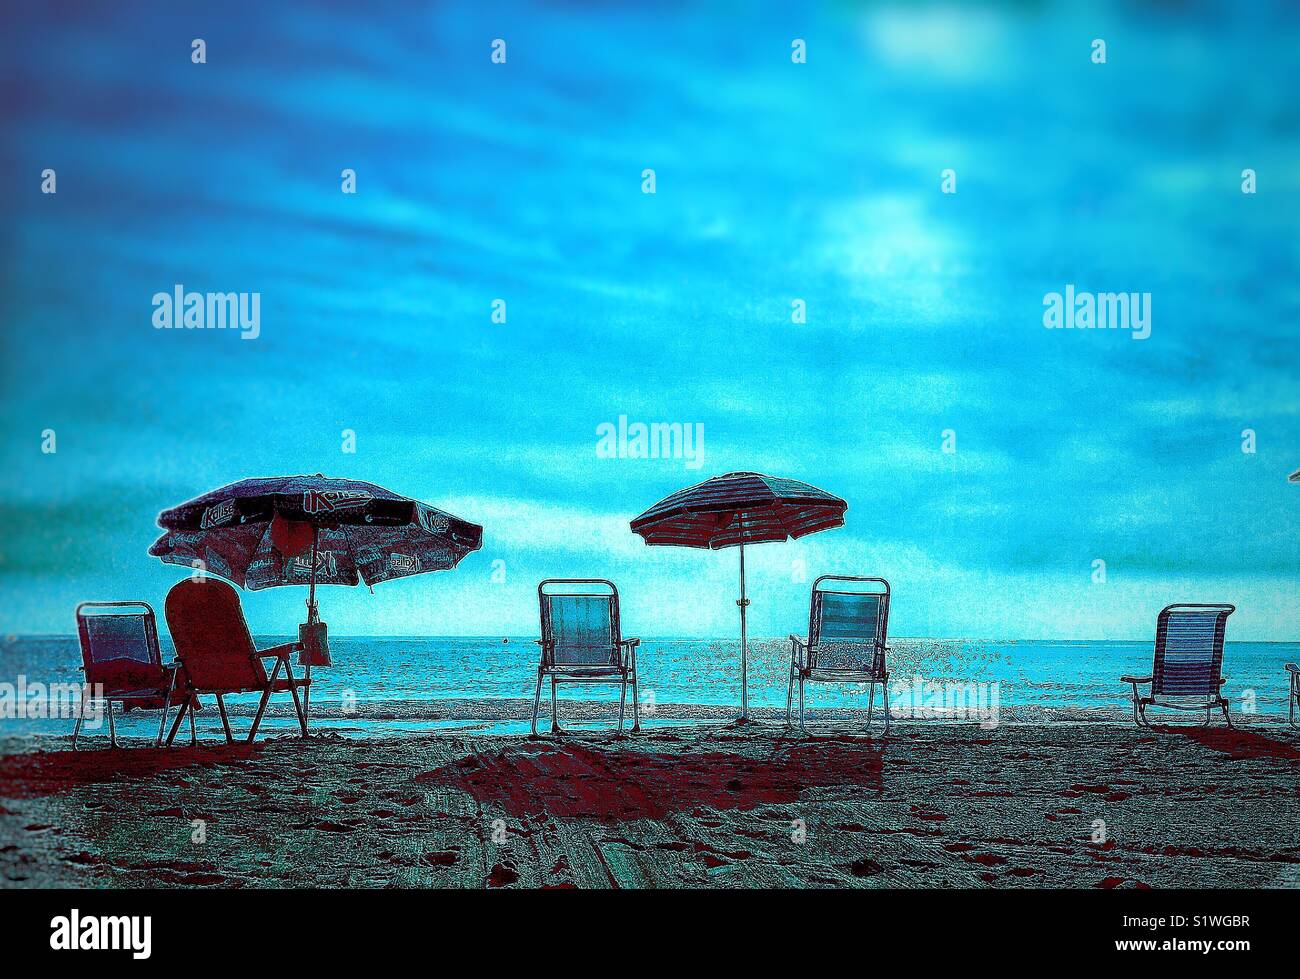 Sedie vuote e ombrelloni su di una spiaggia di sabbia con un mare calmo e azzurro cielo nuvoloso Foto Stock